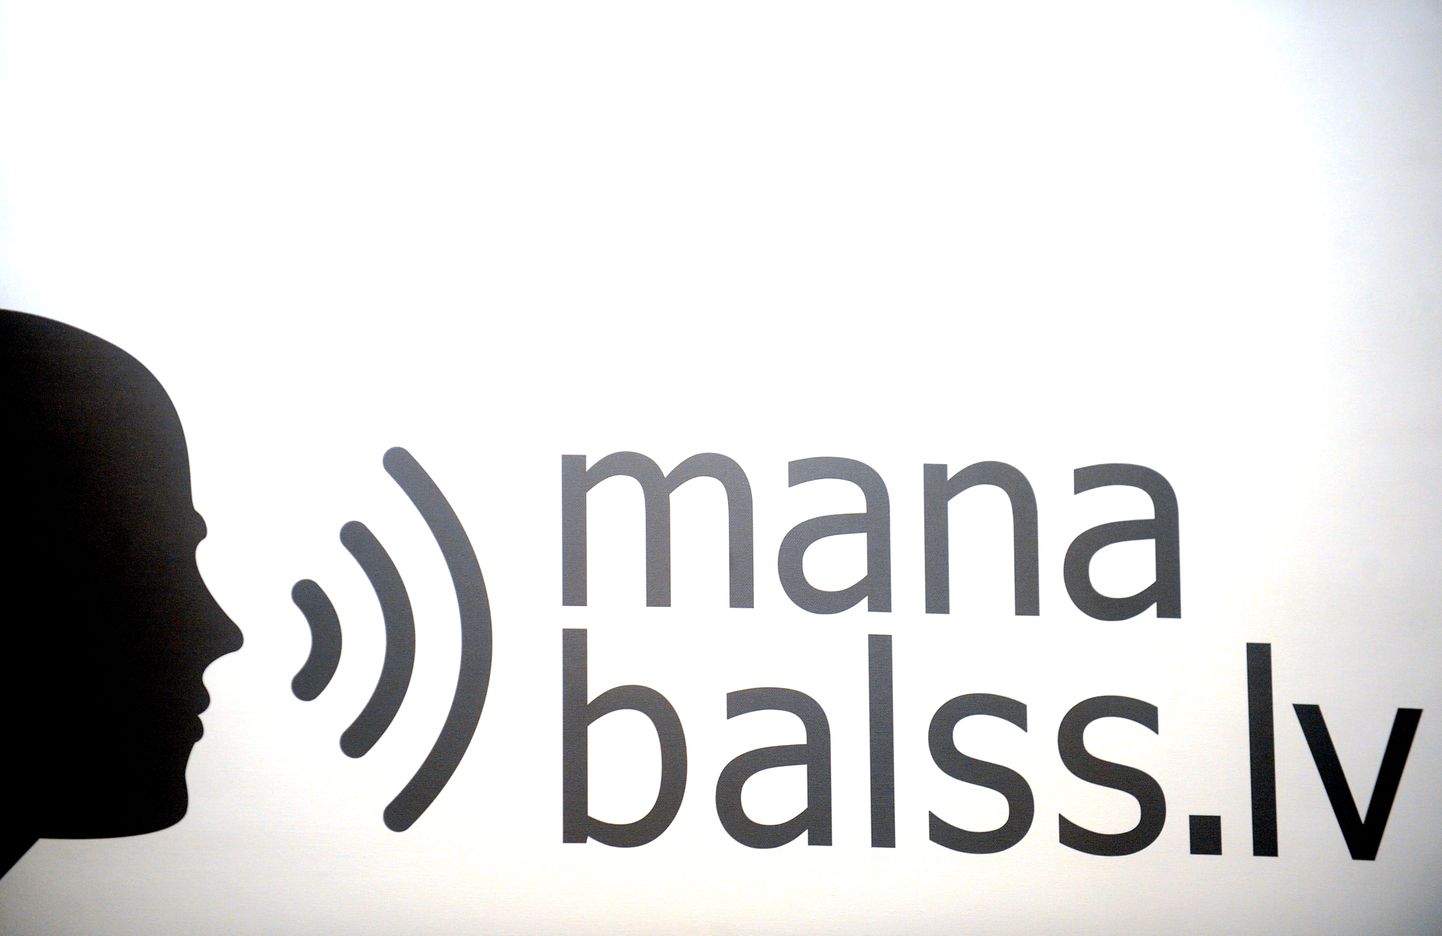 Portāla "Manabalss.lv" logo.